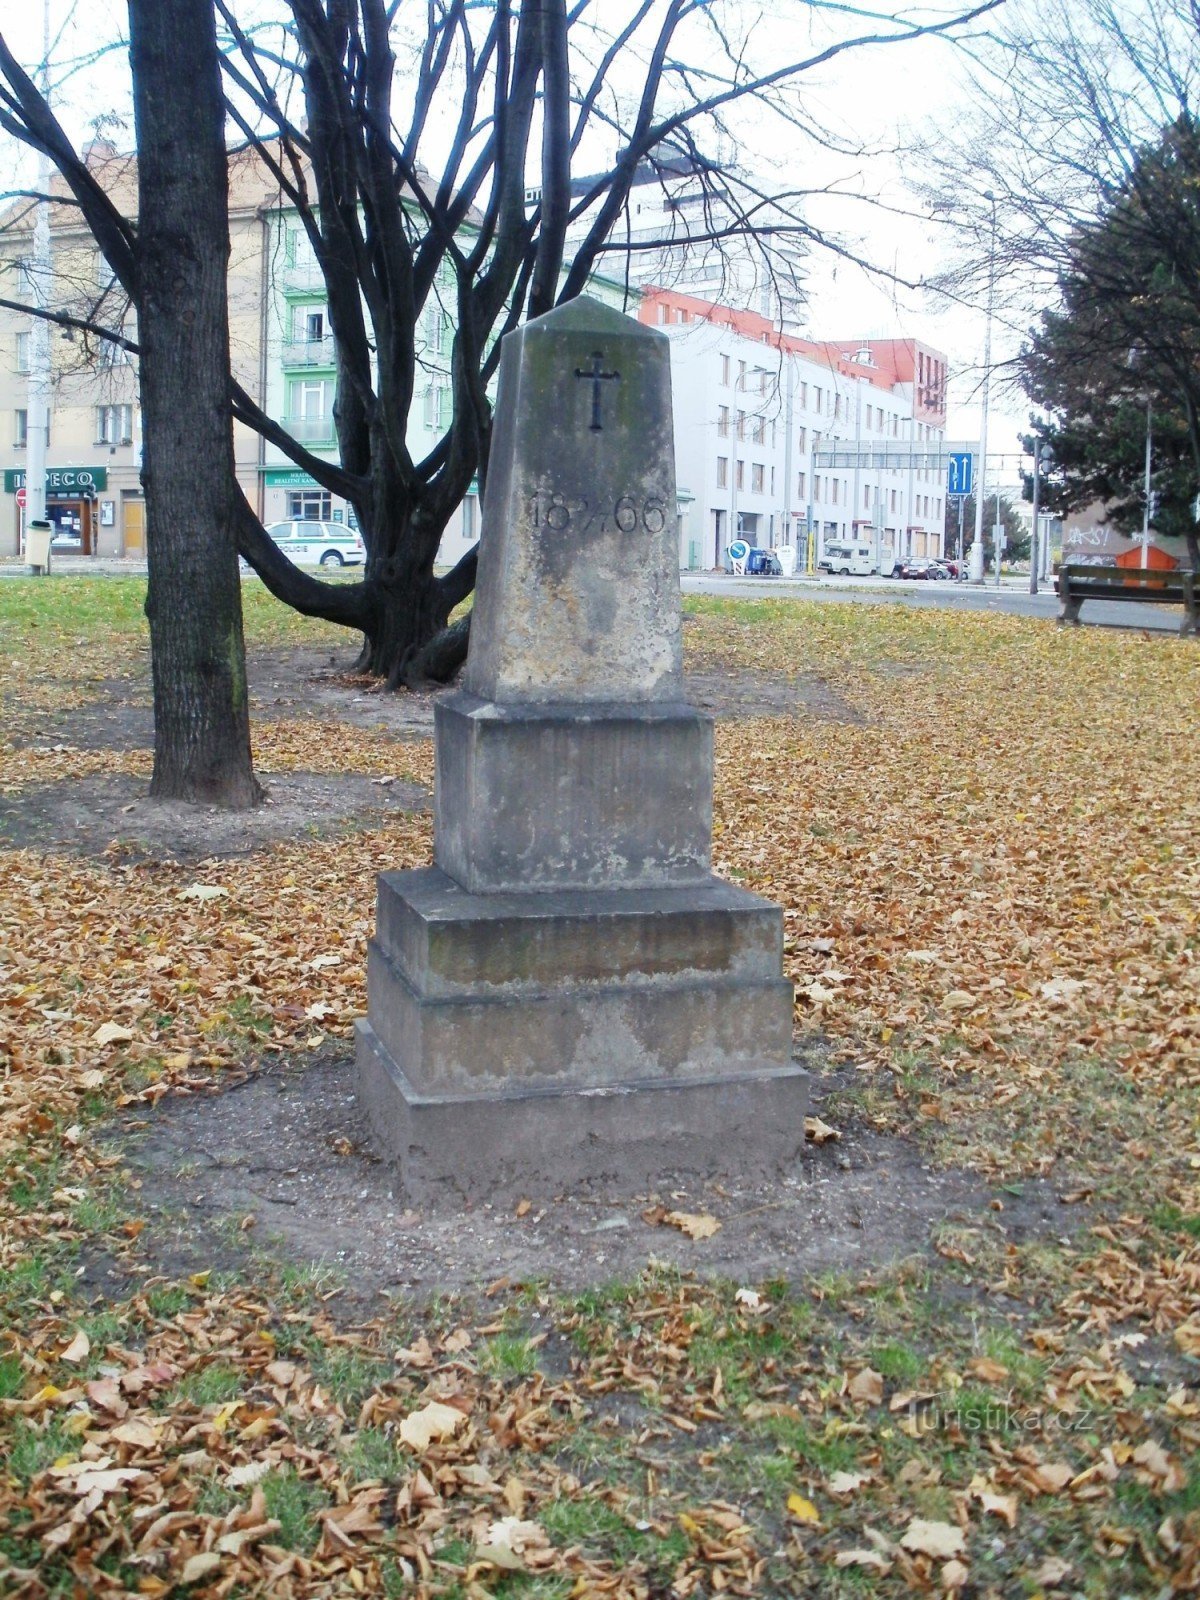 Градец Кралове - памятник битве 1866 года на Блажичковой площади.